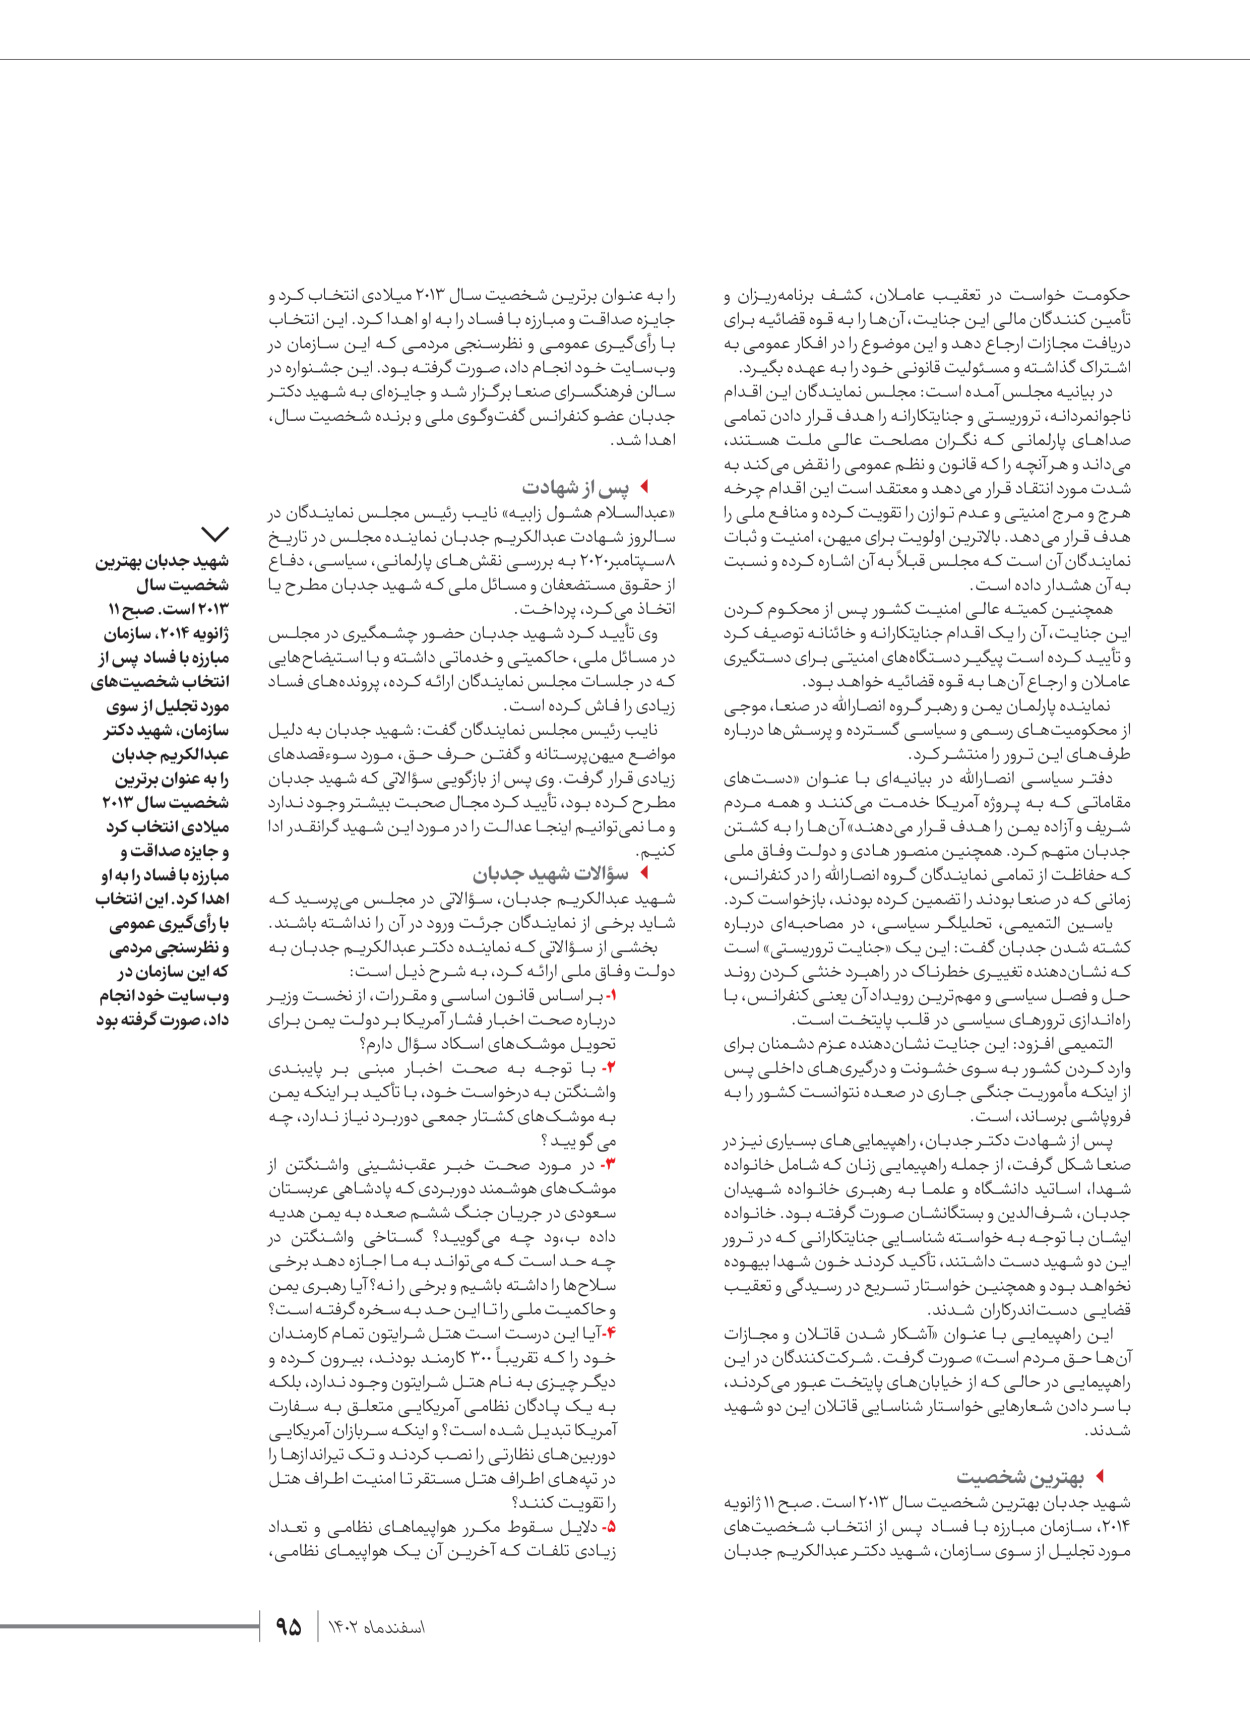 روزنامه ایران - ویژه نامه شهدای قدس ۴ - ۰۱ اسفند ۱۴۰۲ - صفحه ۹۵